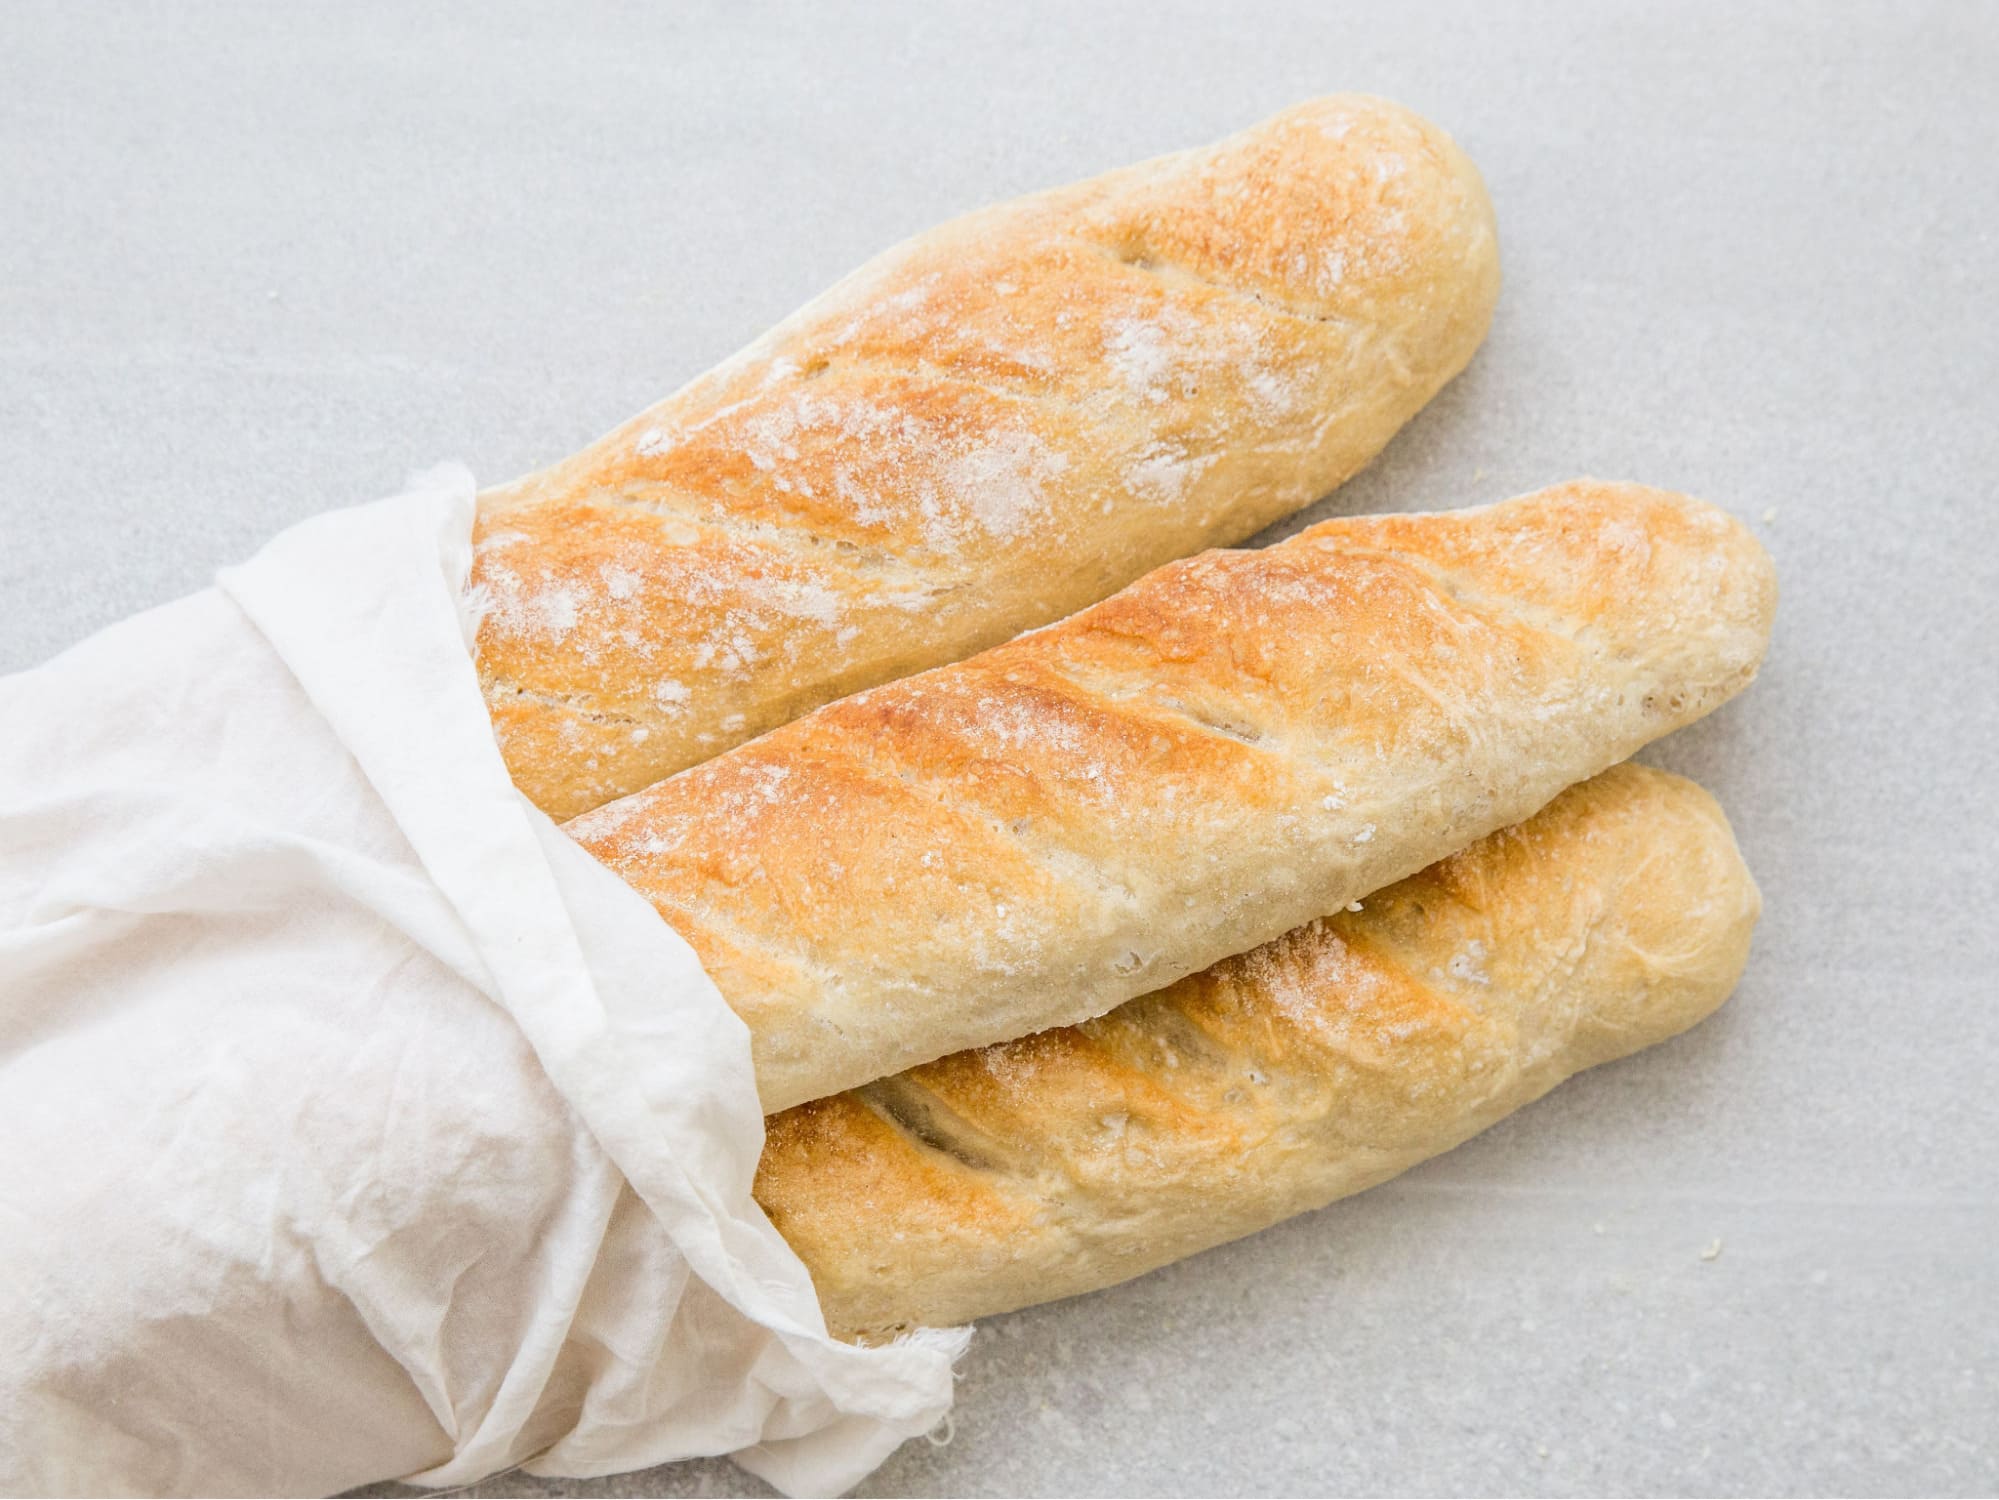 ขนมปัง 100 กรัมมีแคลอรีไม่มาก